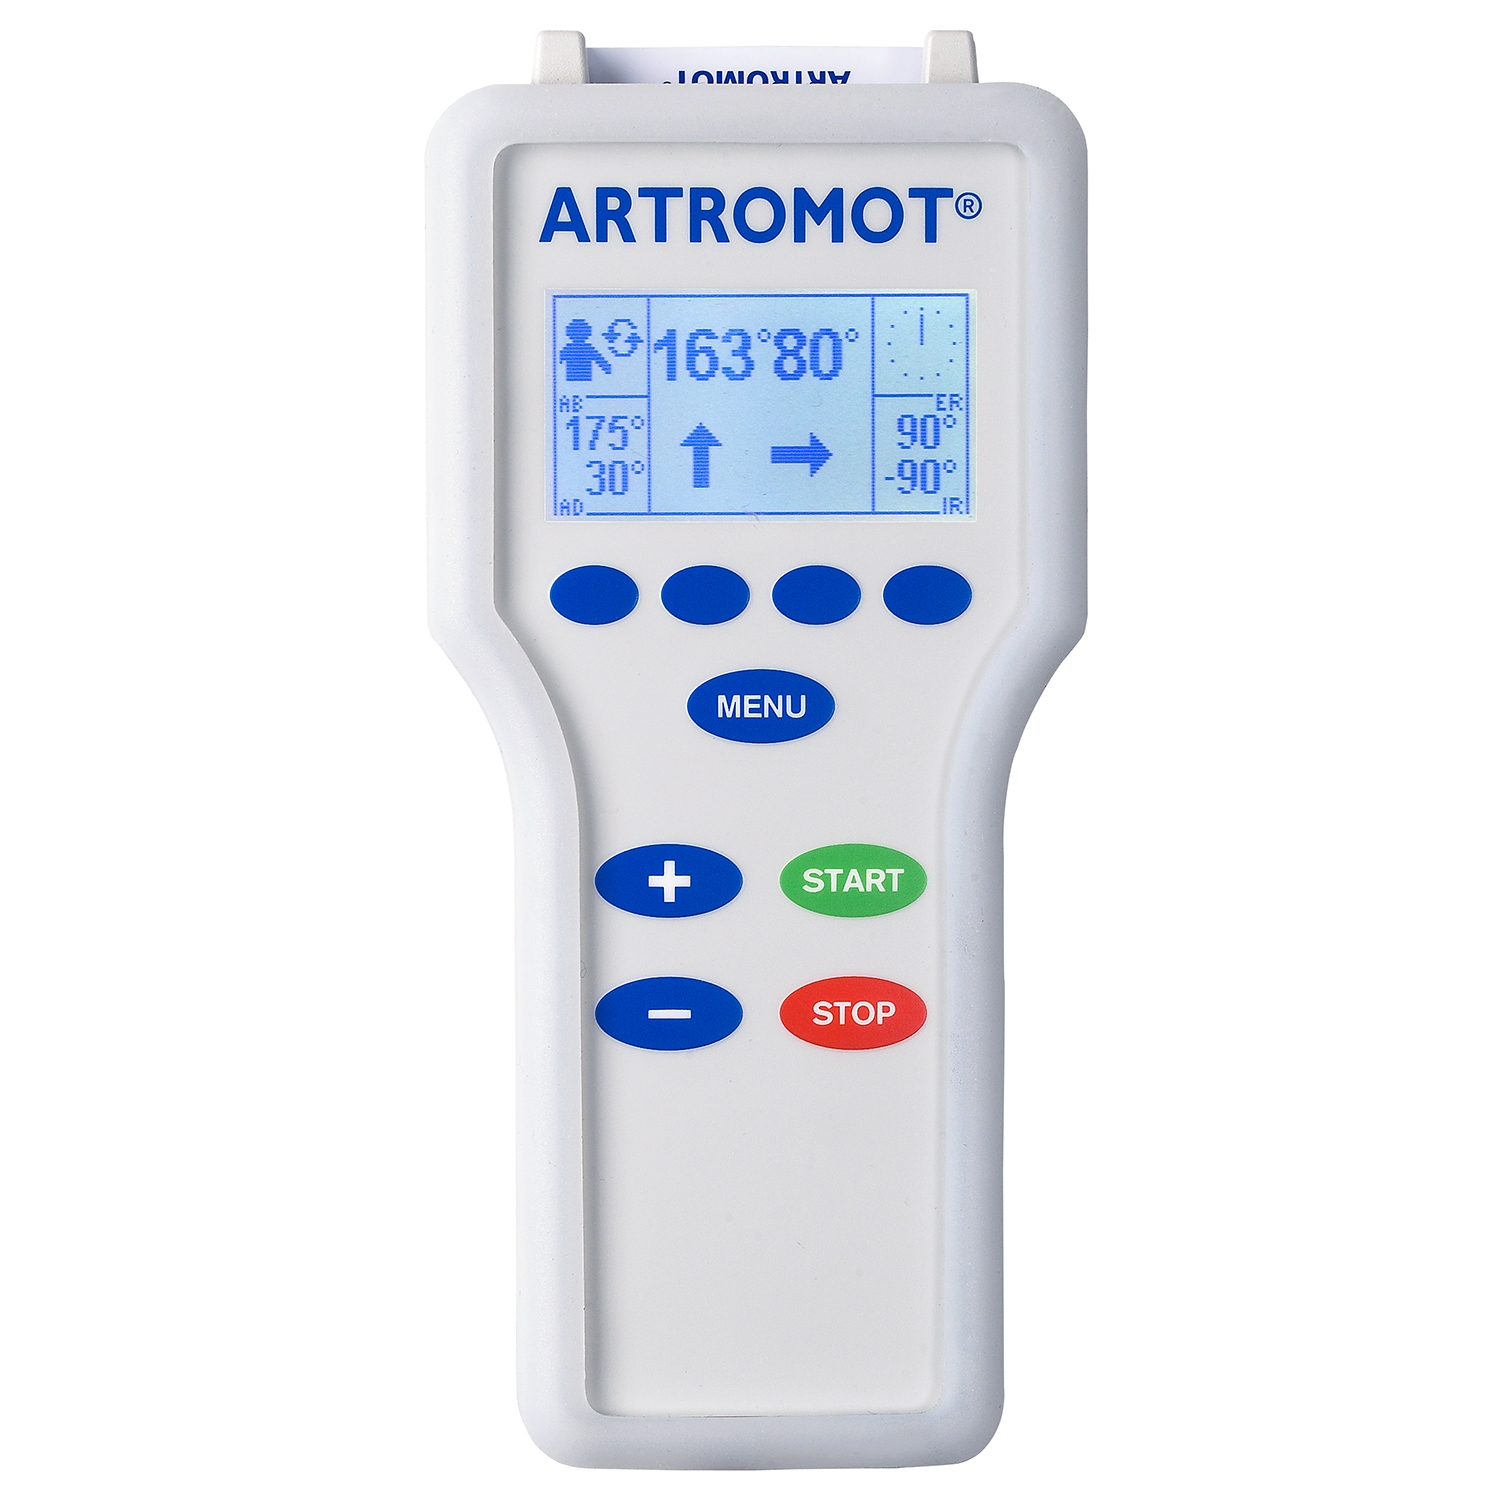 Artromot S3 comfort chip épaule